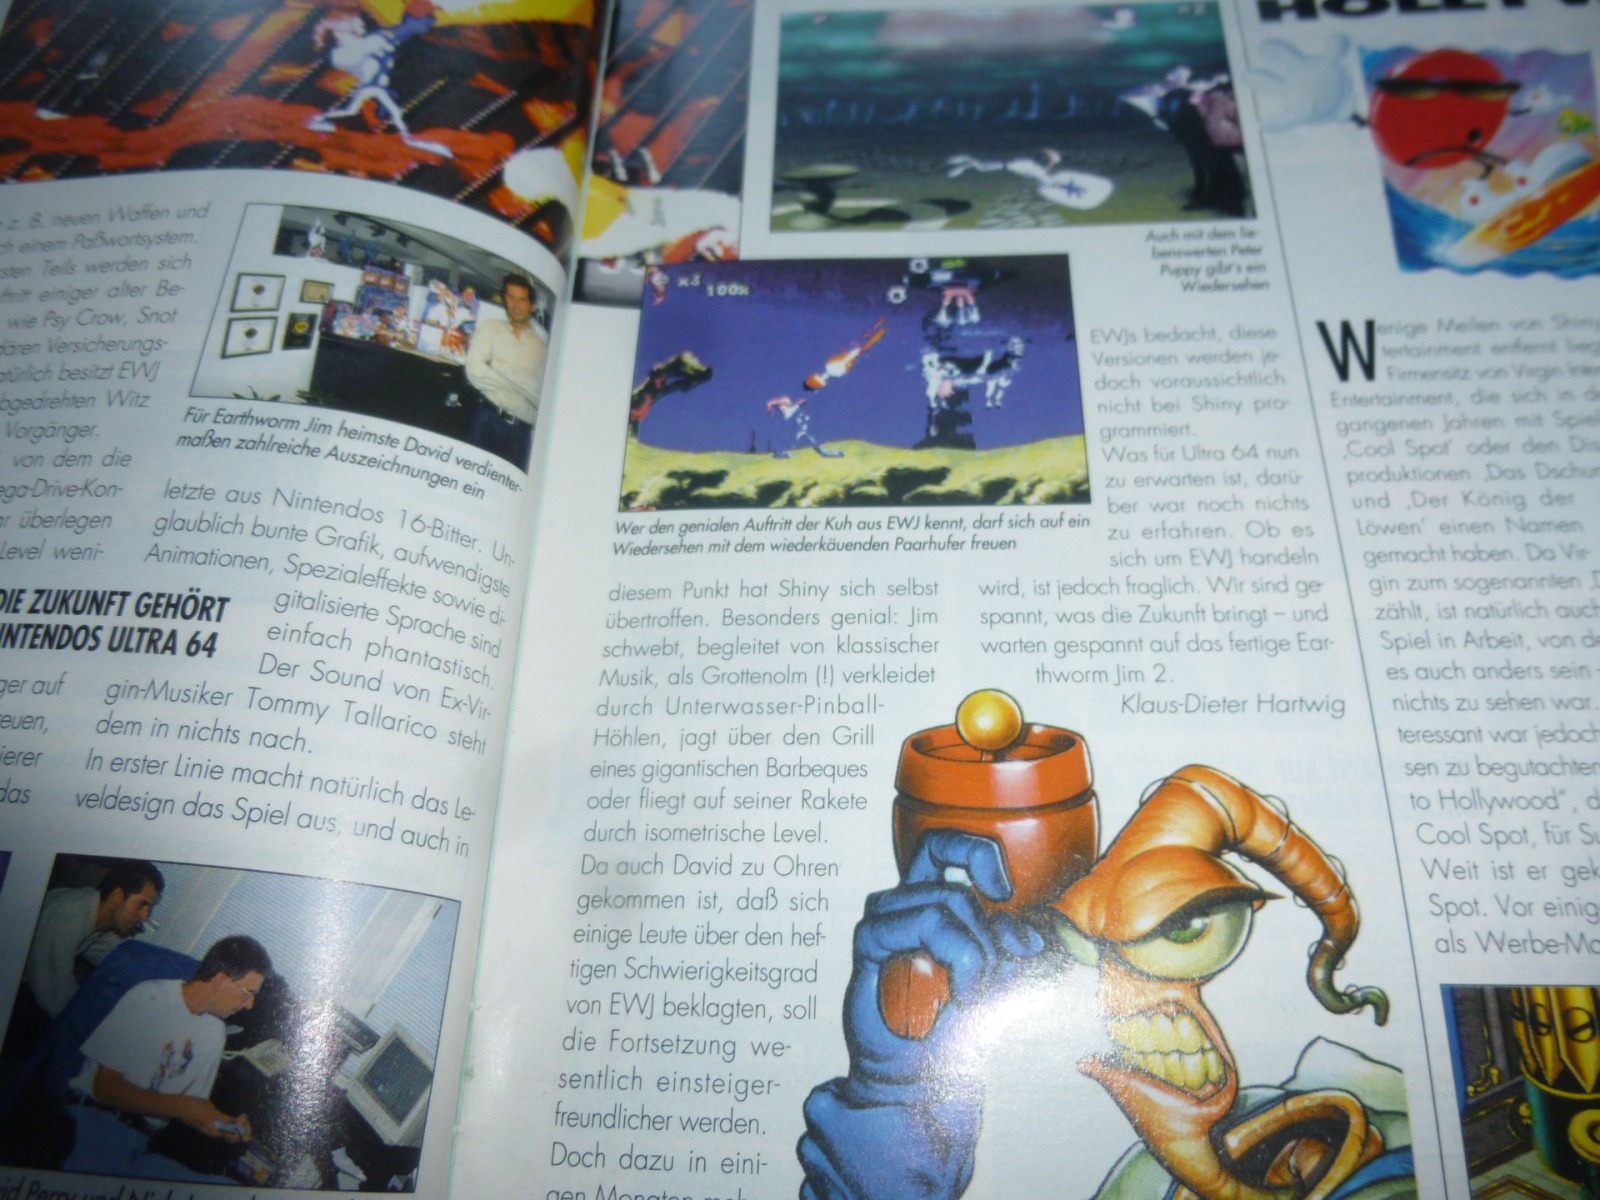 TOTAL Das unabhängige Magazin - 100% Nintendo - Ausgabe 10/95 1995 7